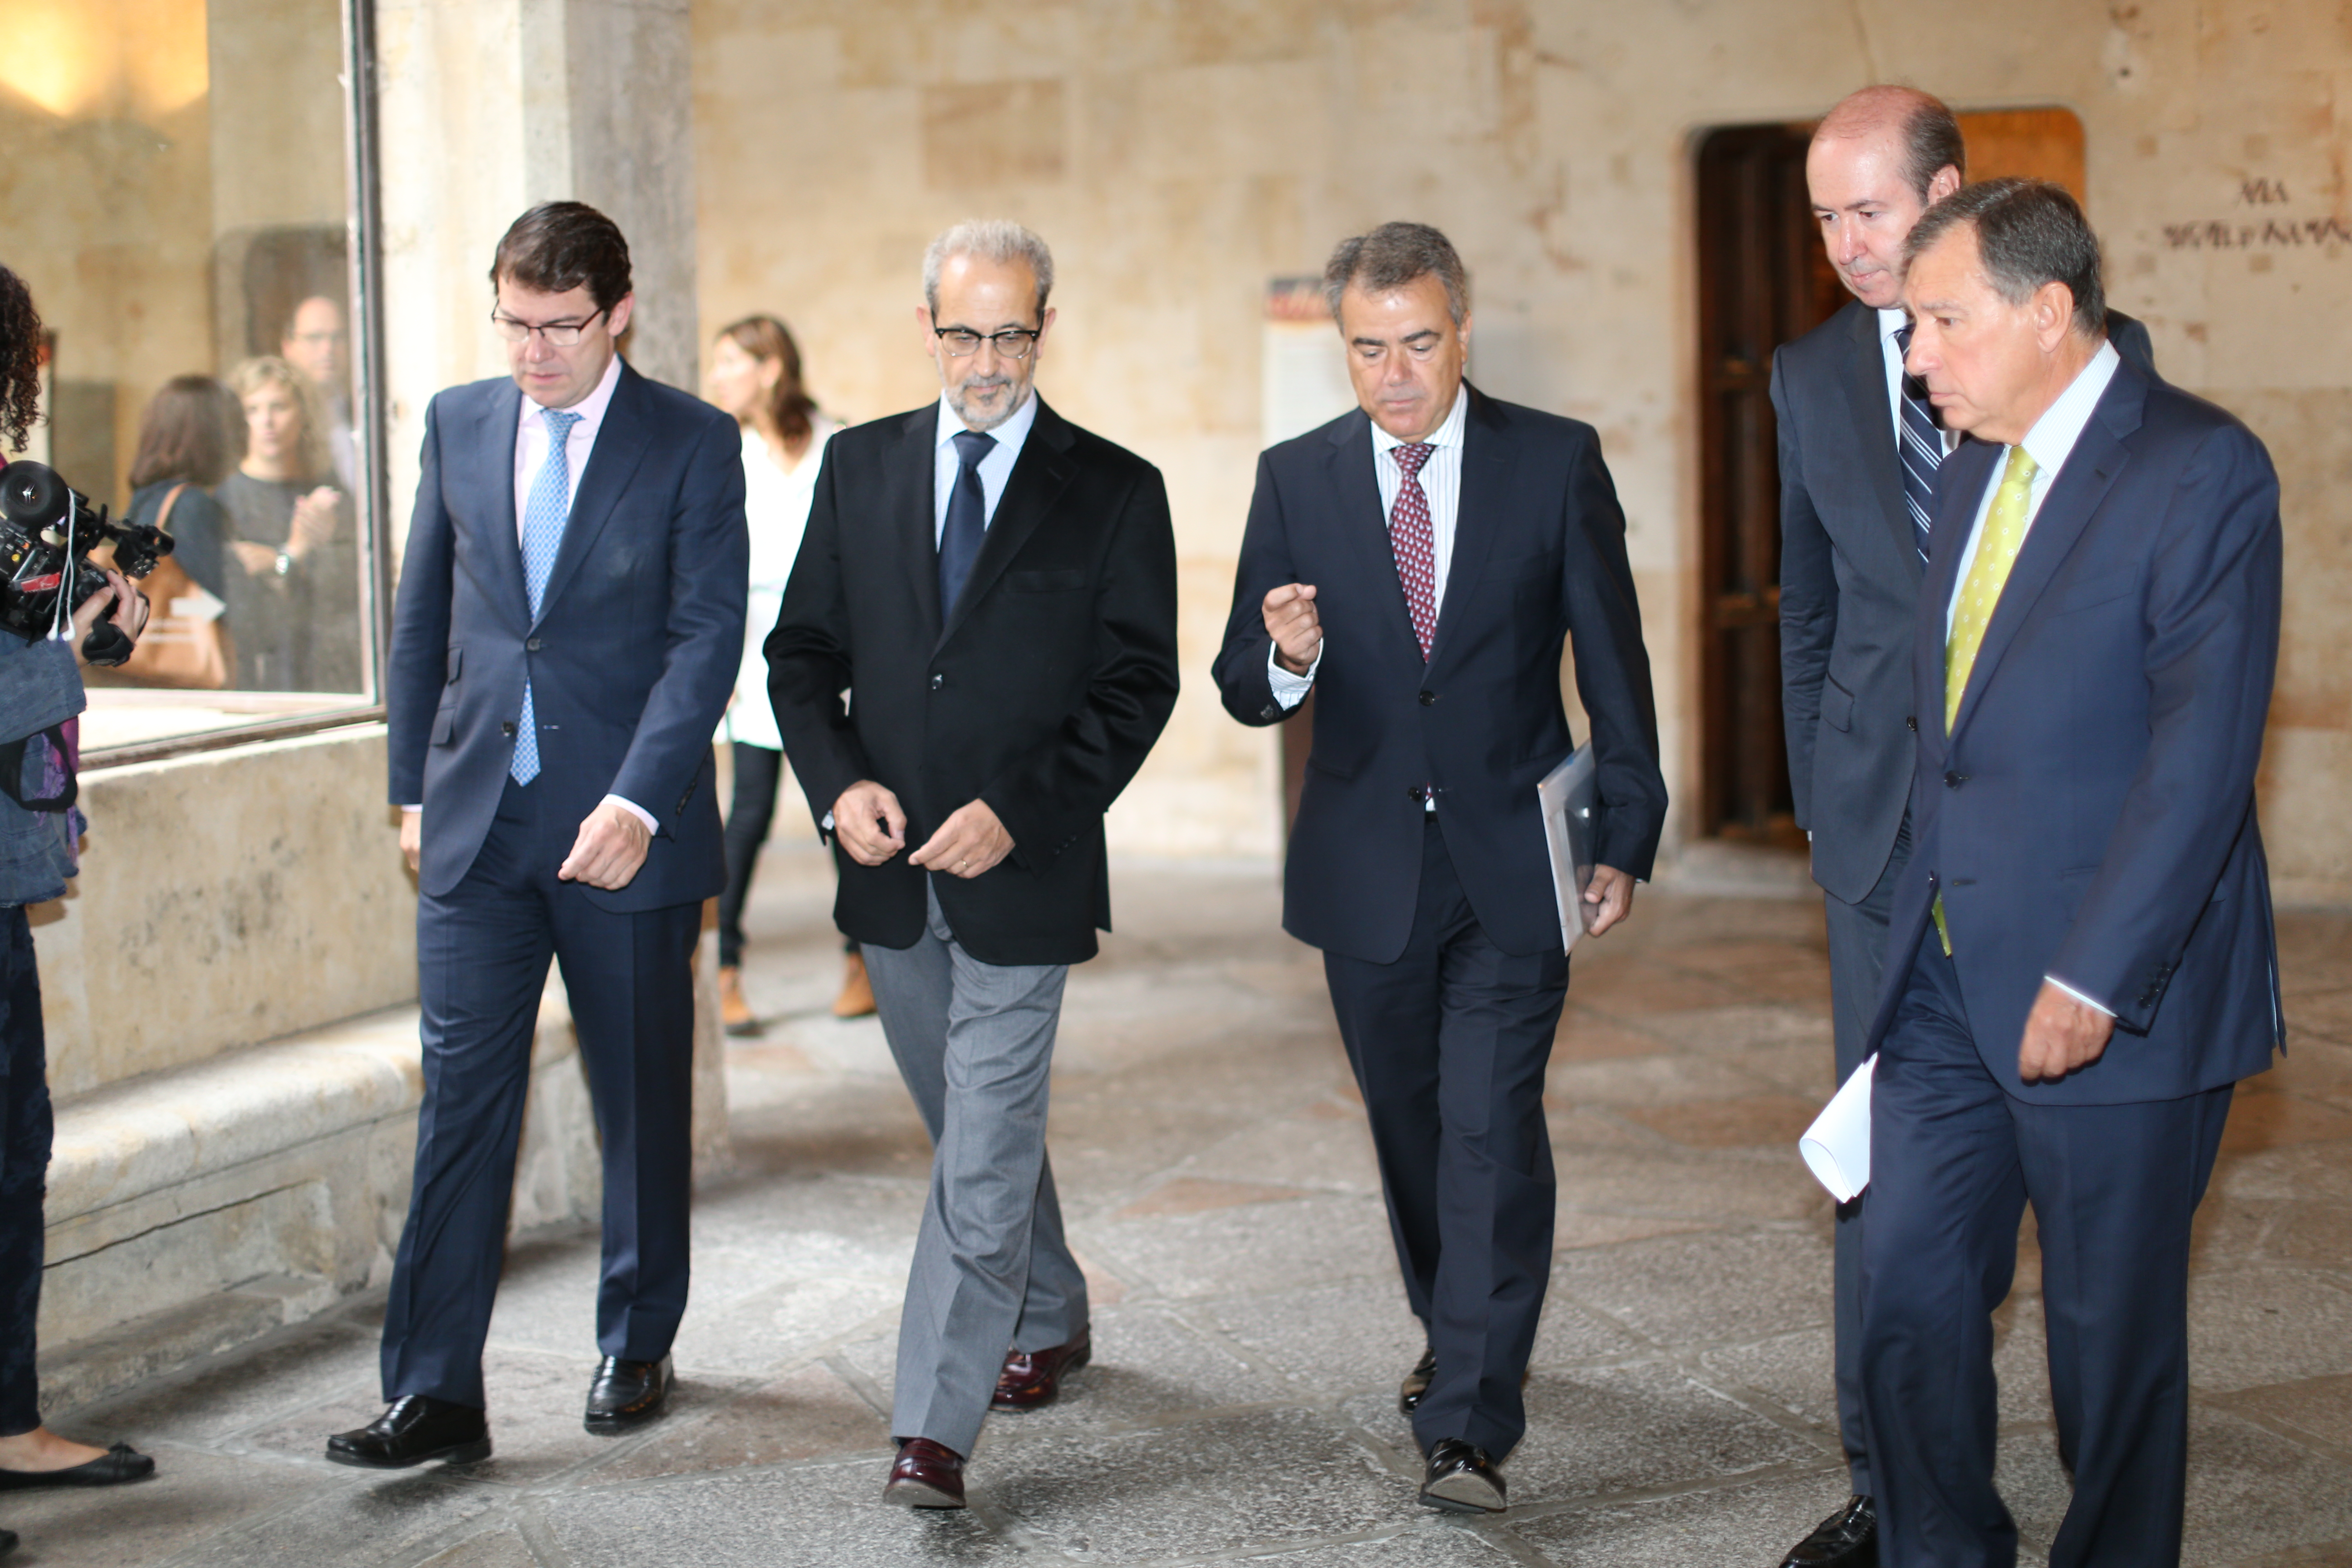 La Universidad de Salamanca acoge la I Cumbre de Presidentes de Consejos de Rectores de la Unión Europea, América Latina y el Caribe